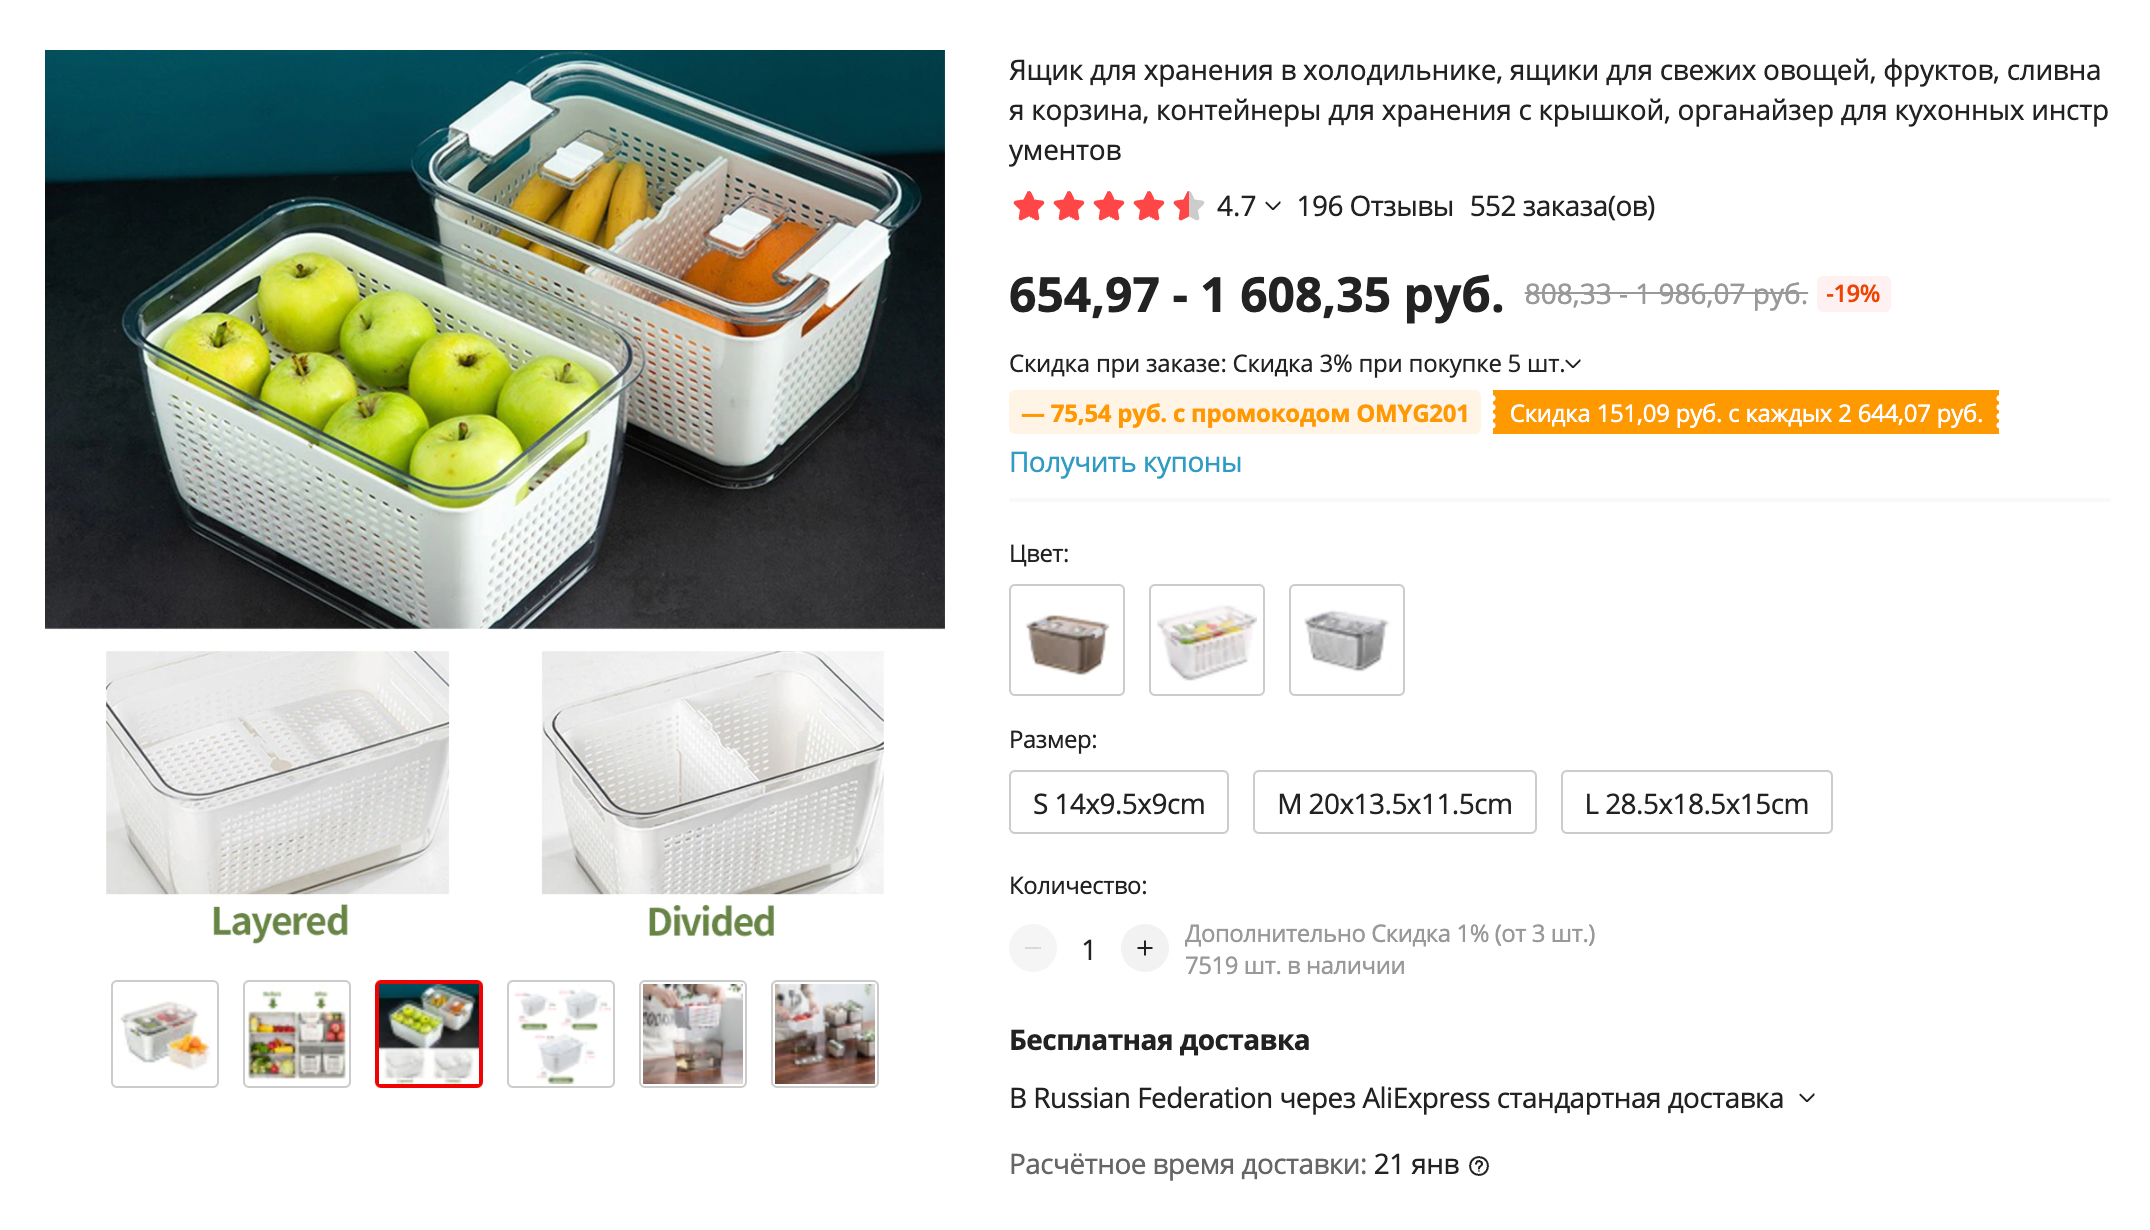 Можно хранить продукты в подобных ящиках, но у нас их нет: я предпочитаю готовить несколько блюд, а мелочей вроде сыра и колбасы в холодильнике всего один⁠-⁠два вида. К тому же в подобных контейнерах плохо видно, что находится внутри. Источник: aliexpress.ru